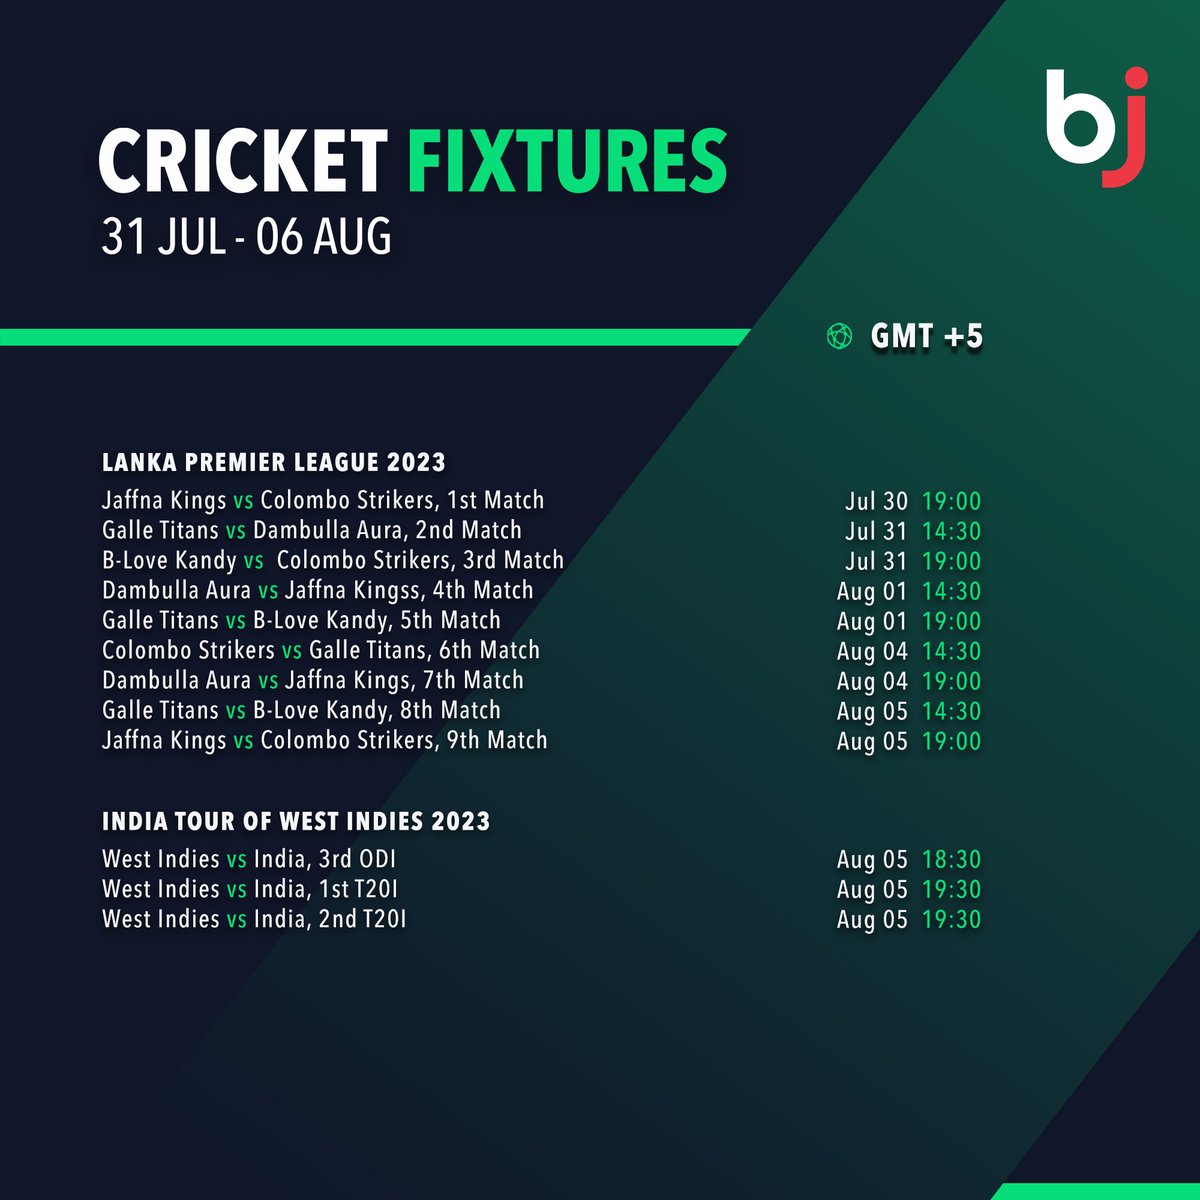 اس ہفتے کے تمام کرکٹ میچوں کا شیڈول ایک نظر میں صرف Baji پر دیکھیں!!

💥 ابھی Baji ممبر کے طور پر رجسٹر ہوں!!💥  baji.social/bj/fbpkr3

#Baji #BJ #Sports #Cricket #Schedule #CricketFixture #ODI #T20I #Test #LPL #Emergingcup2023